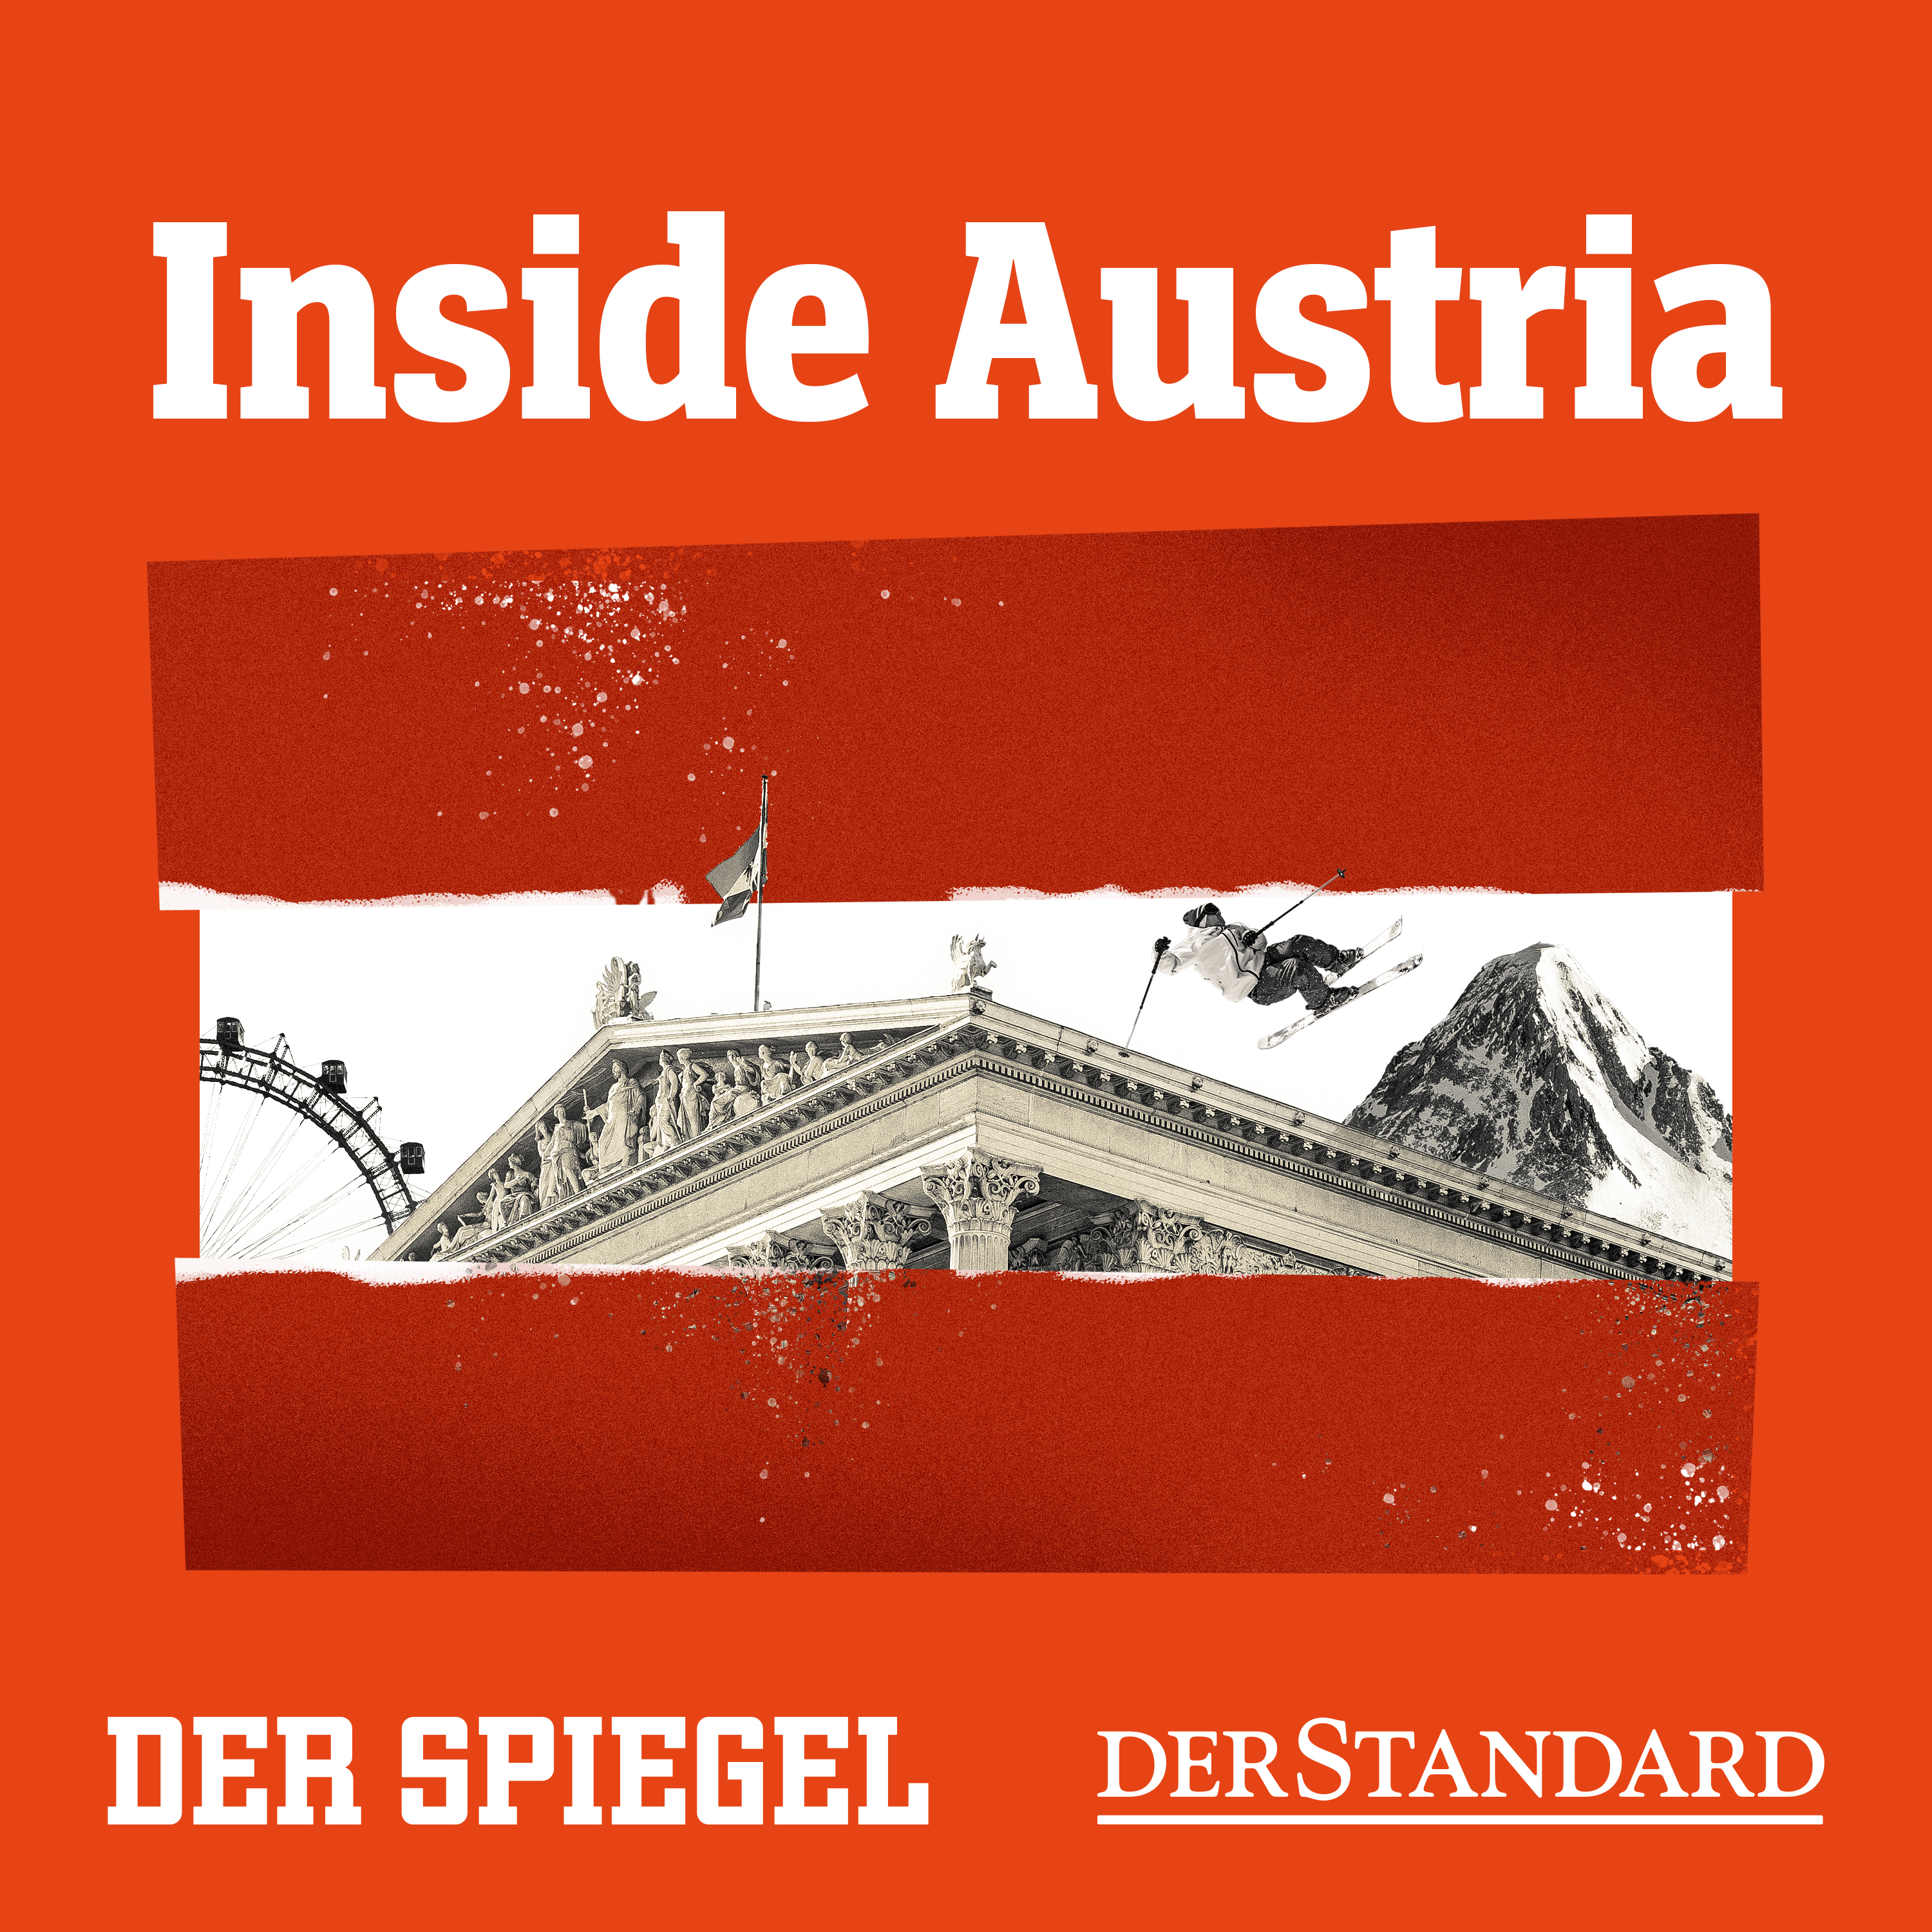 Schiebereien, Sabotage, Verrat: Die Abgründe in Österreichs Innenministerium